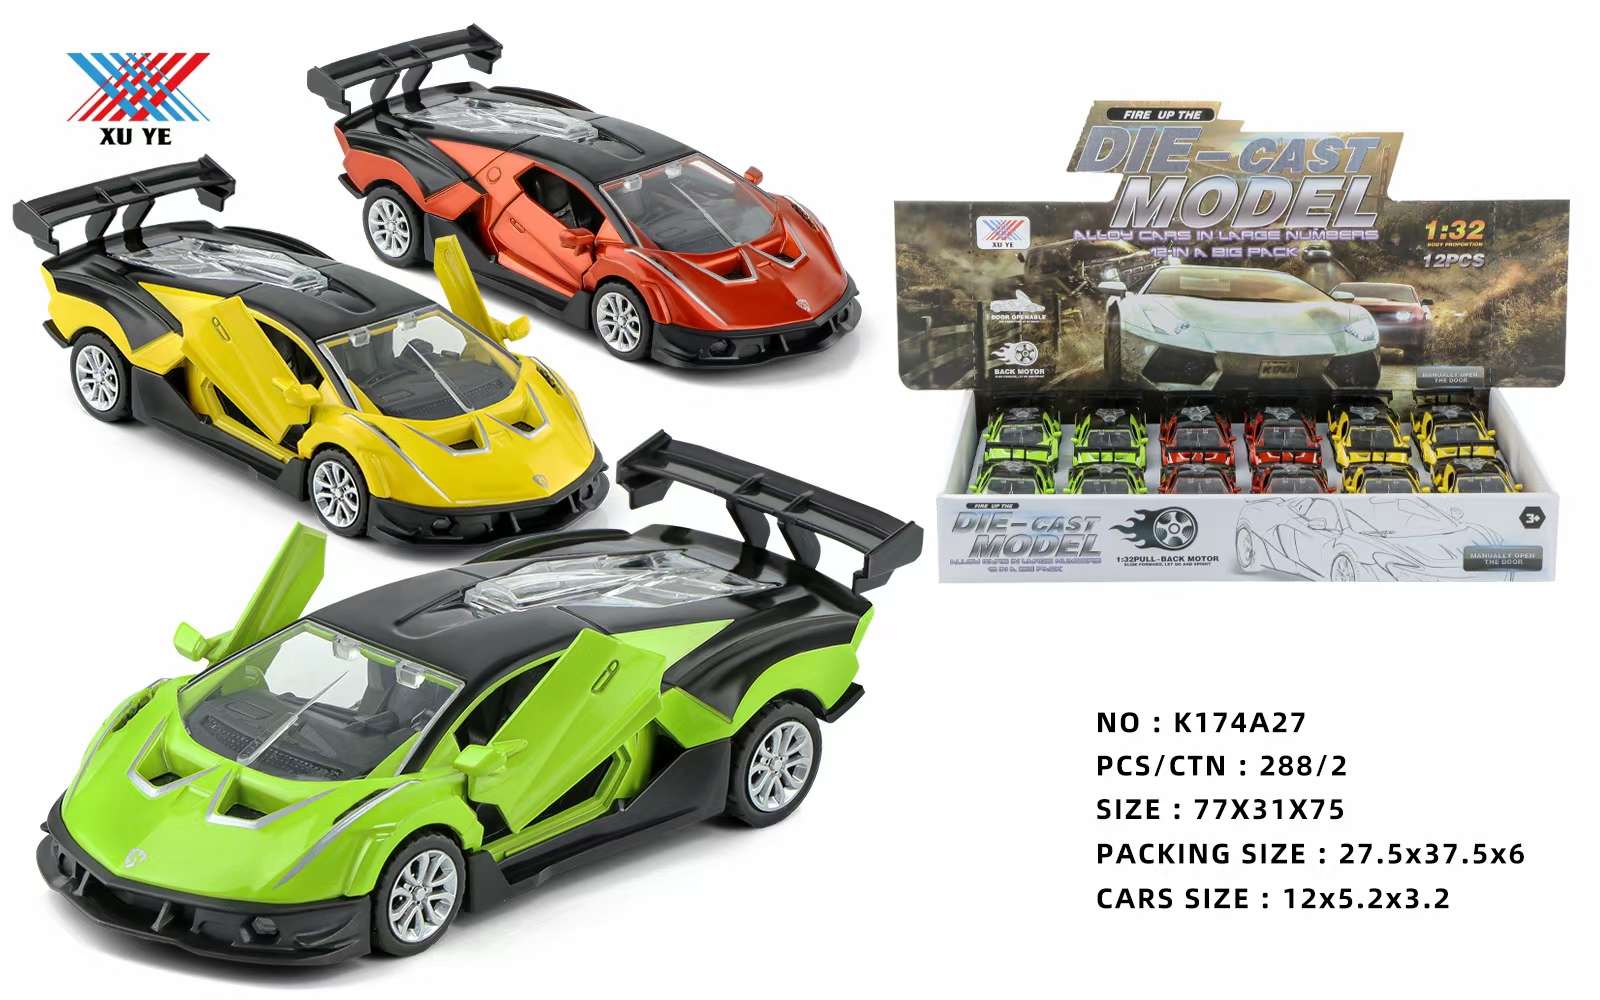 合金车玩具儿童玩具车 车模汽车模型 玩具车模型玩具 童年乐趣车模收藏